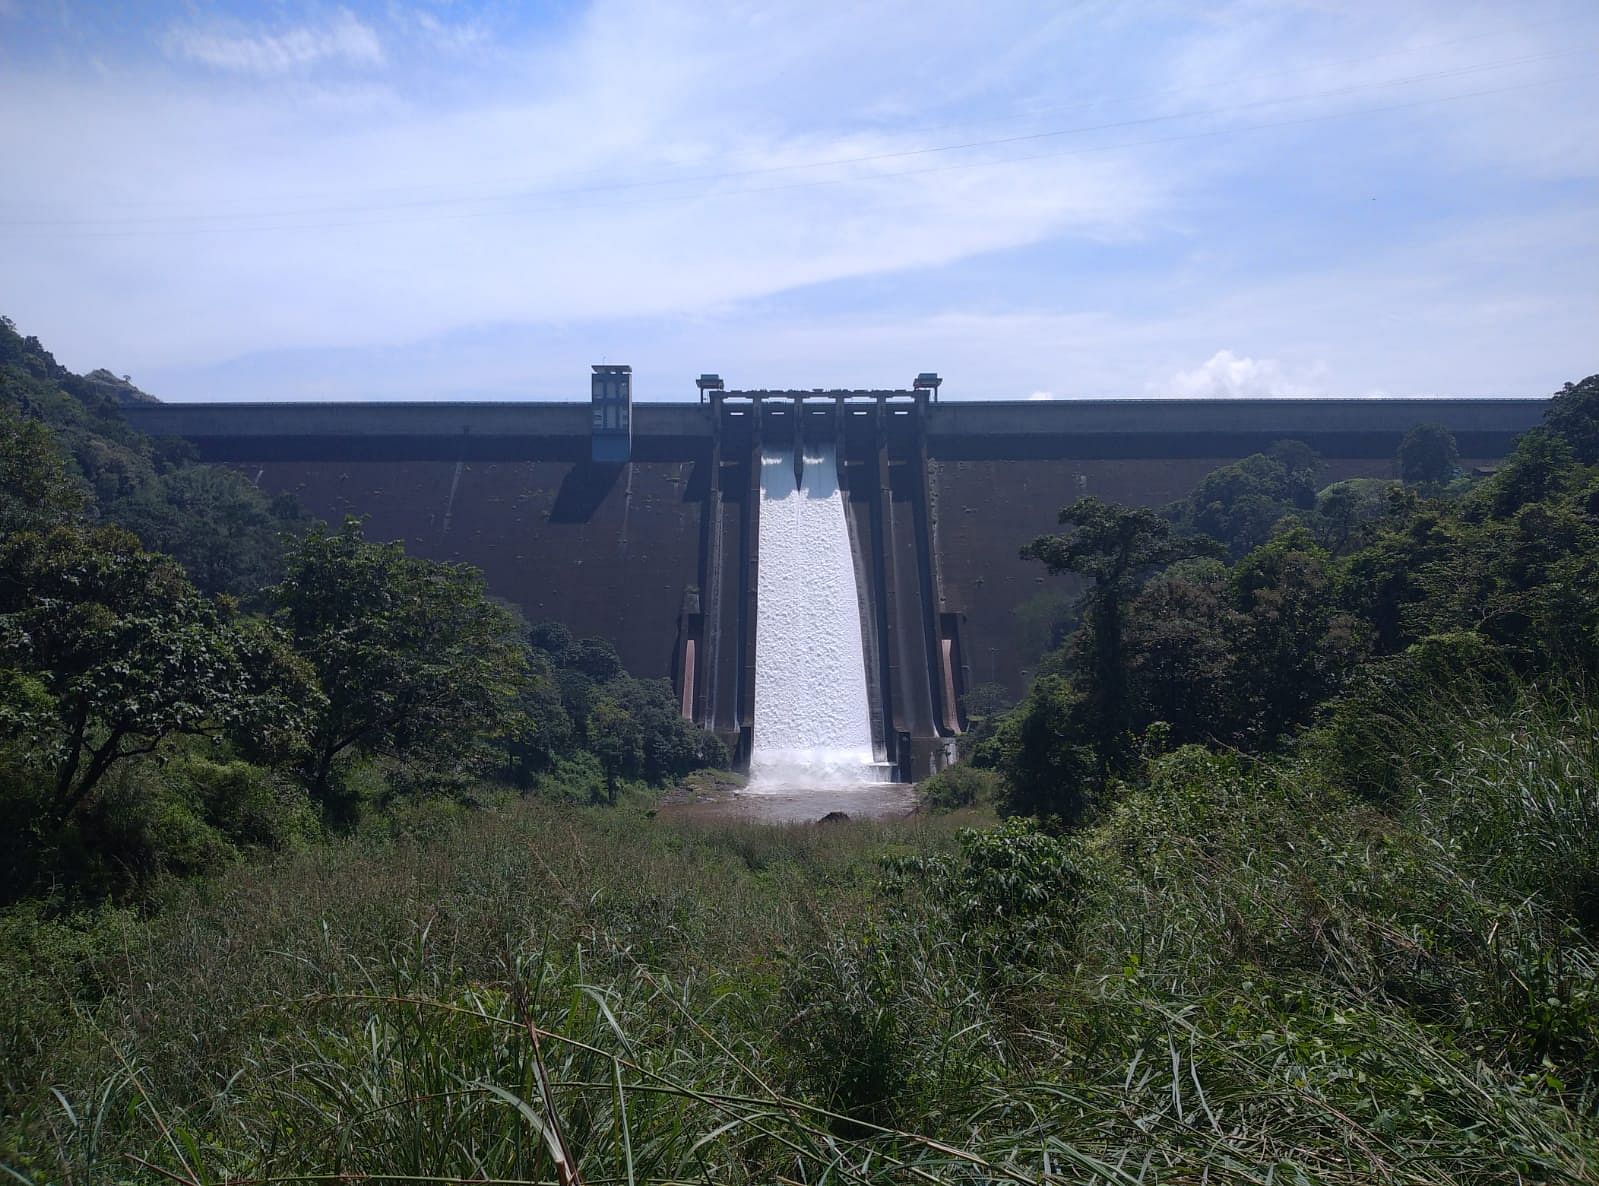 Shutters of Idukki dam opened. Credit: Special arrangement